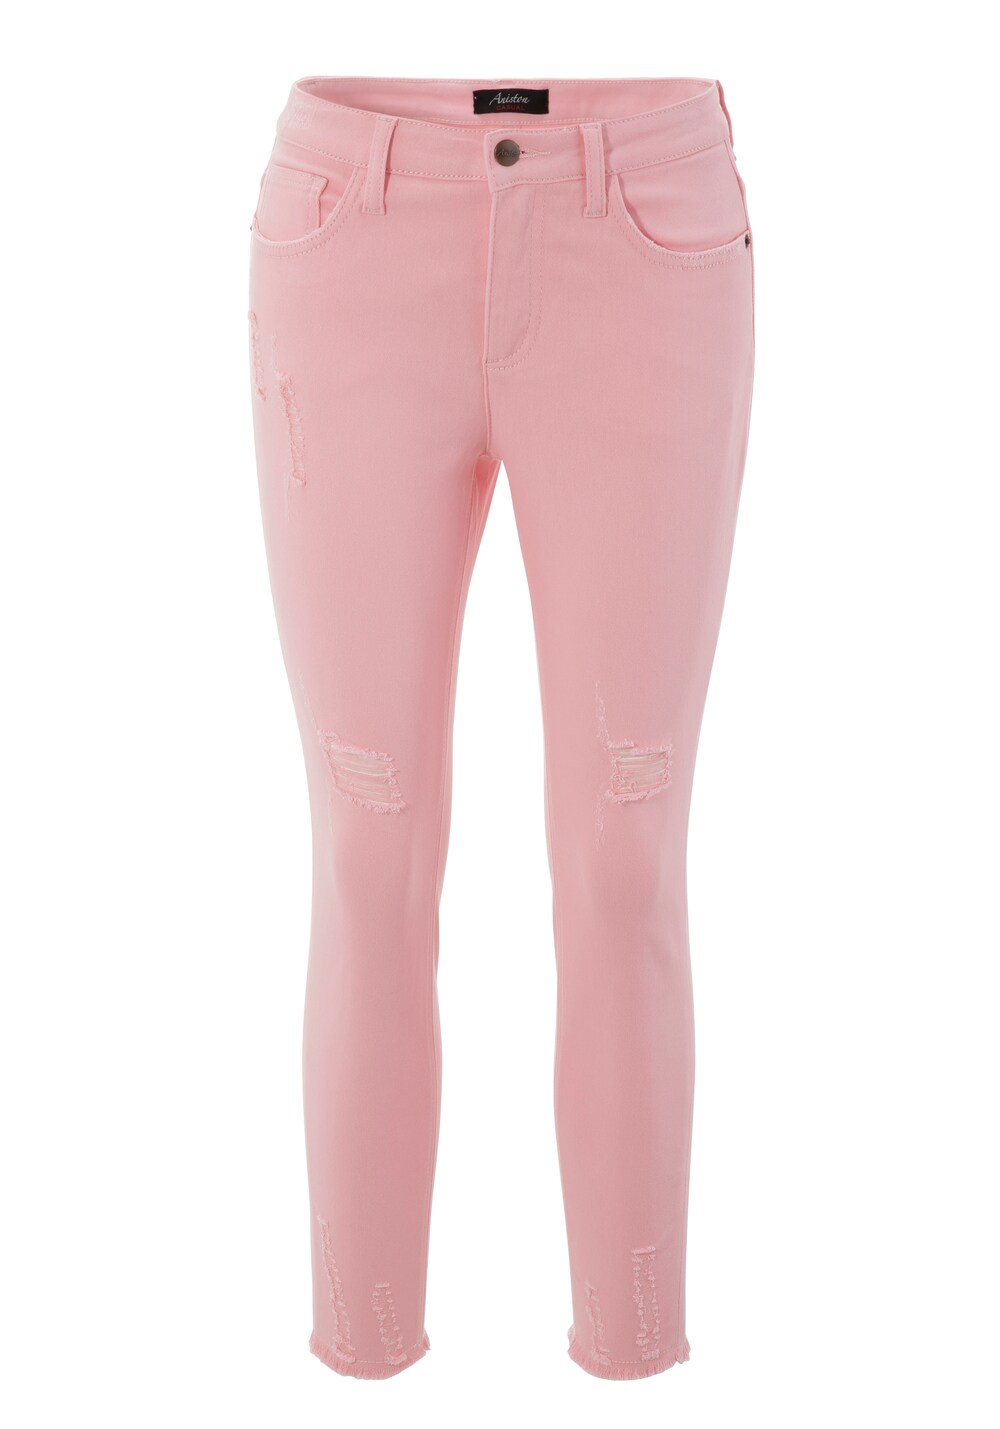 Узкие джинсы Aniston Casual, розовый